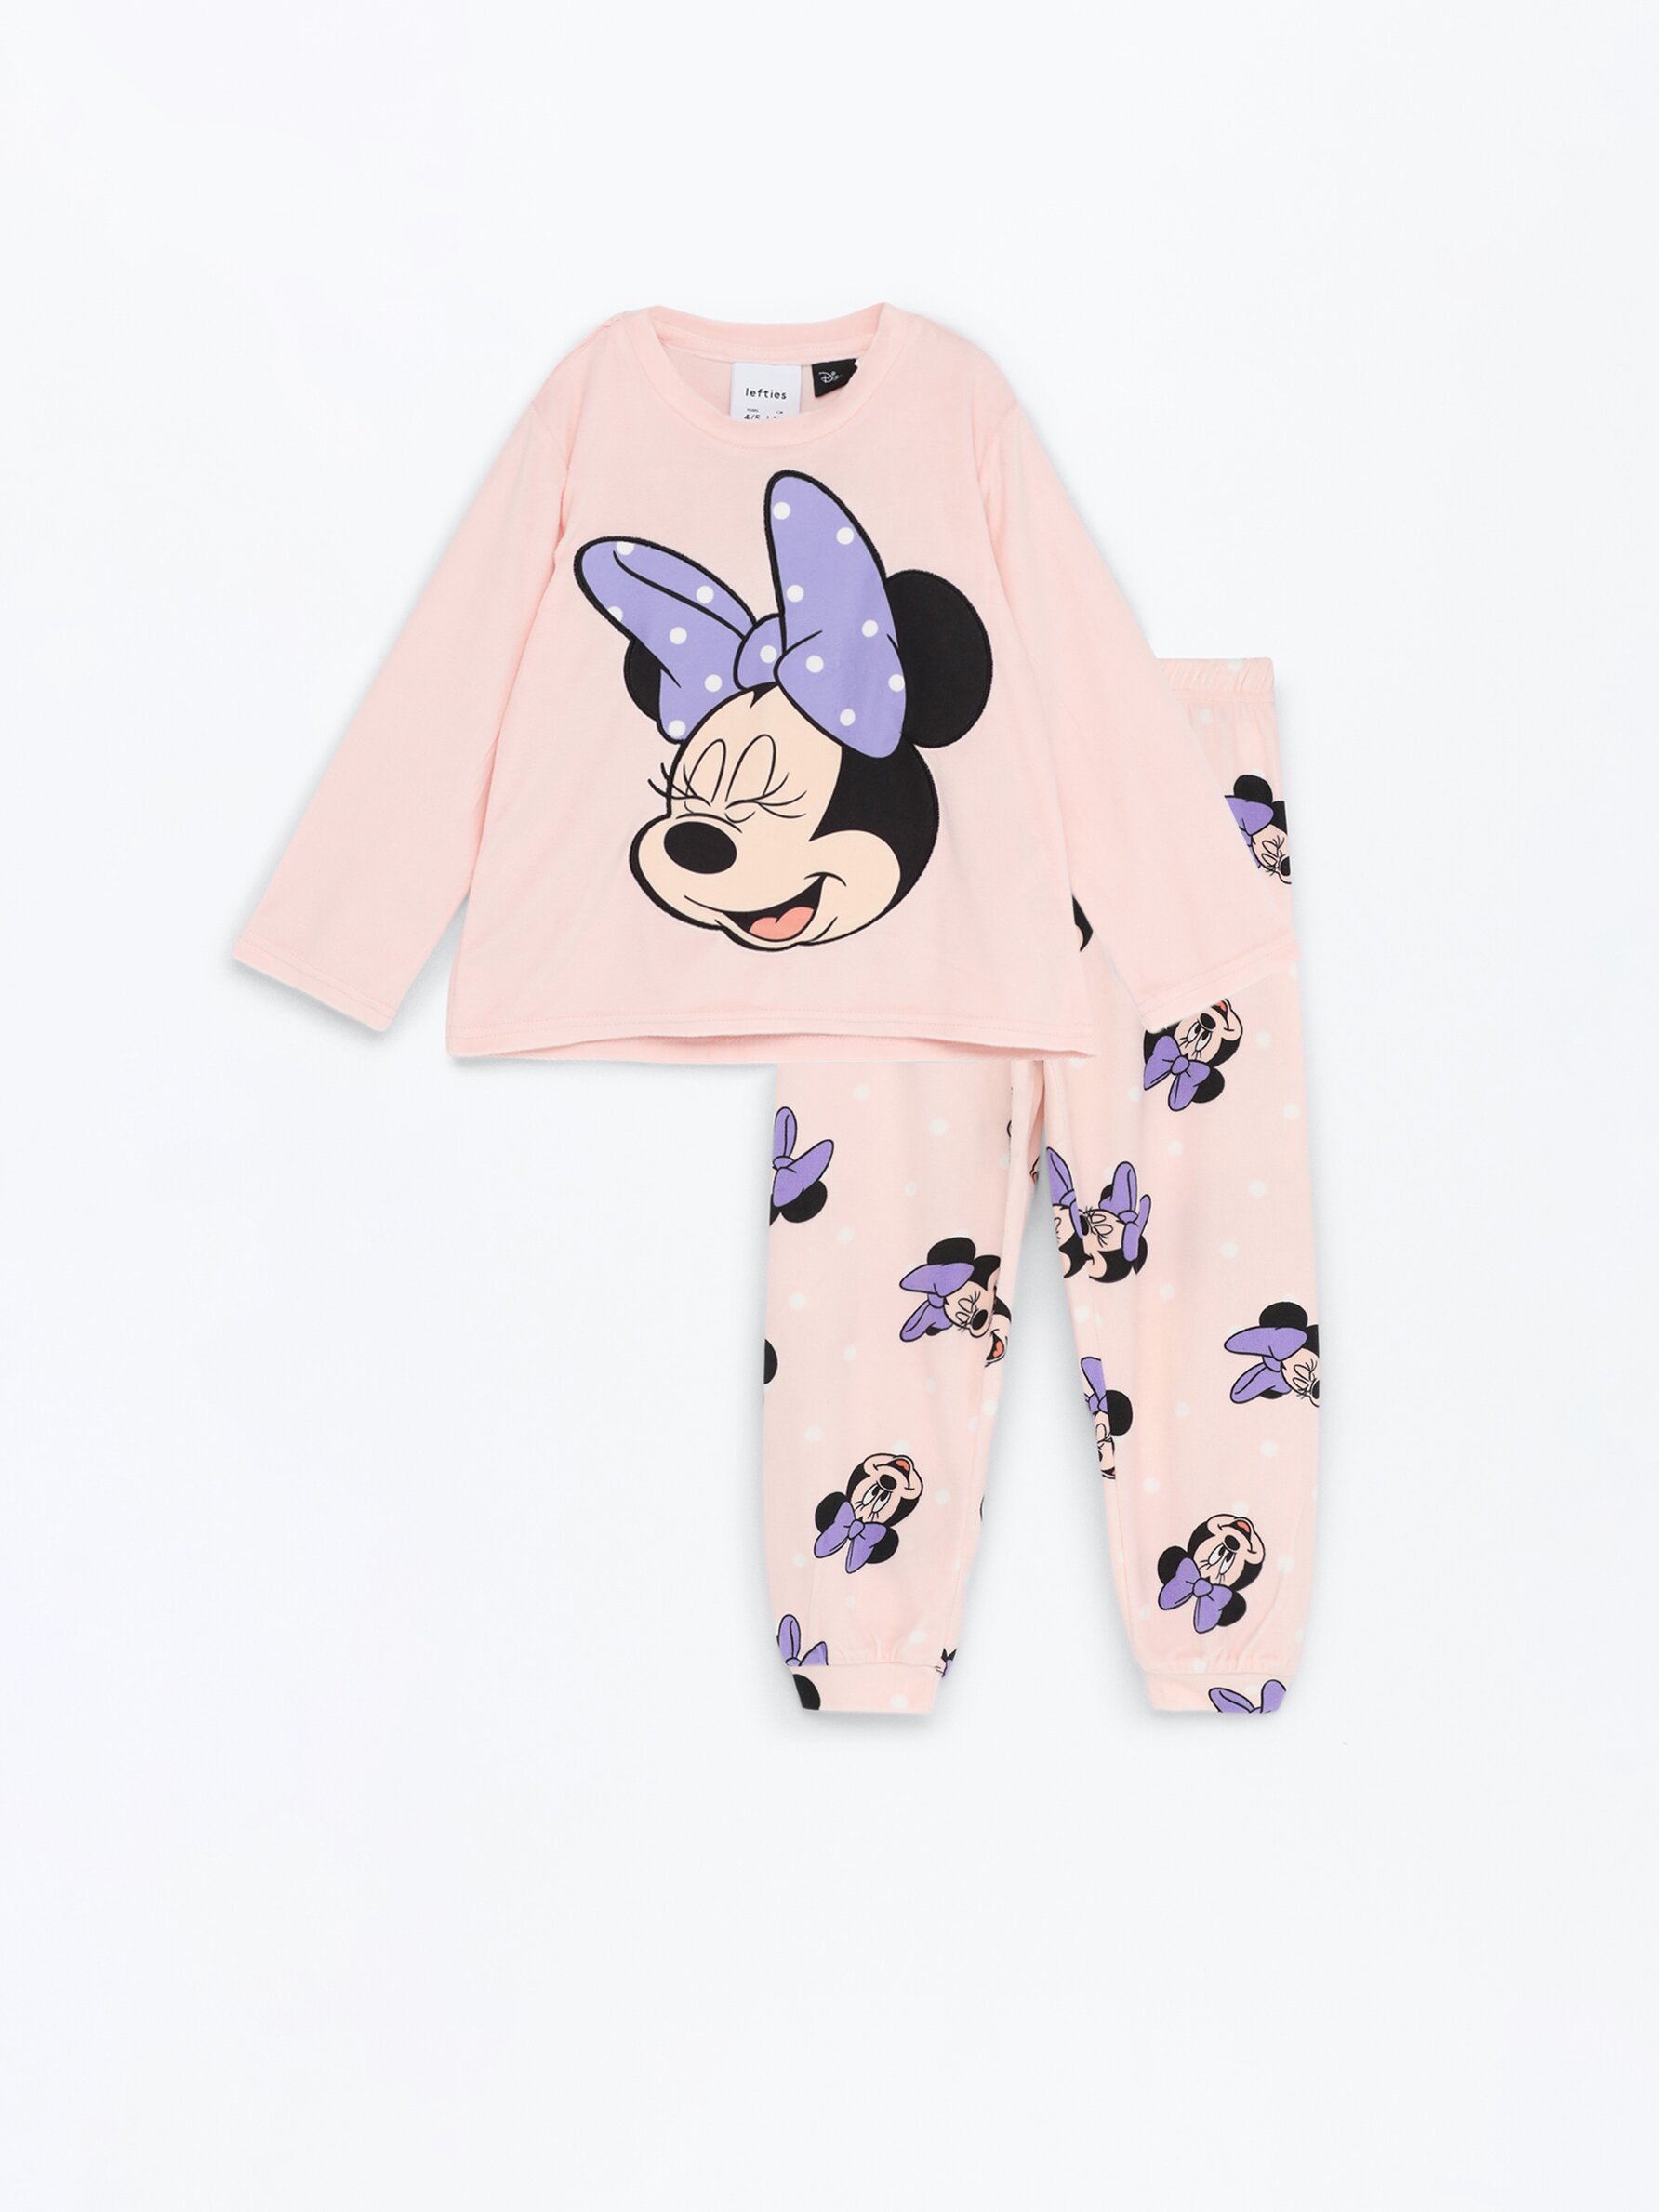 Pijama aterciopelado estampado Lilo & Stitch ©Disney - Pijamas - ROPA -  Bebé Niño - Niños 